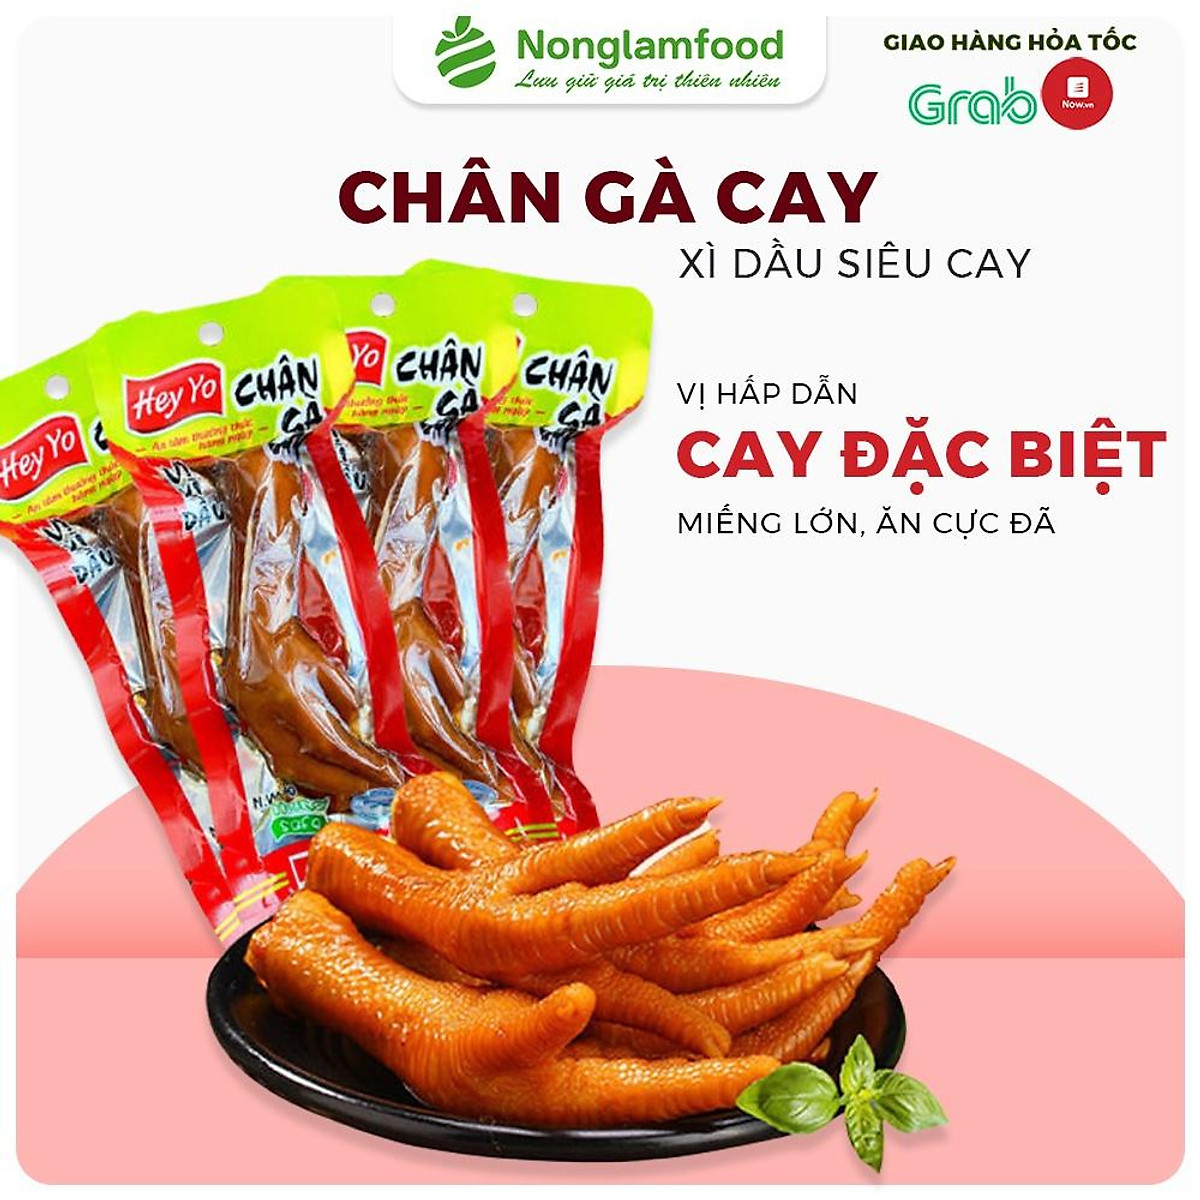 Chân gà cay heyyo ướp xì dầu 1 hộp 10 đồ ăn vặt chân gà Việt